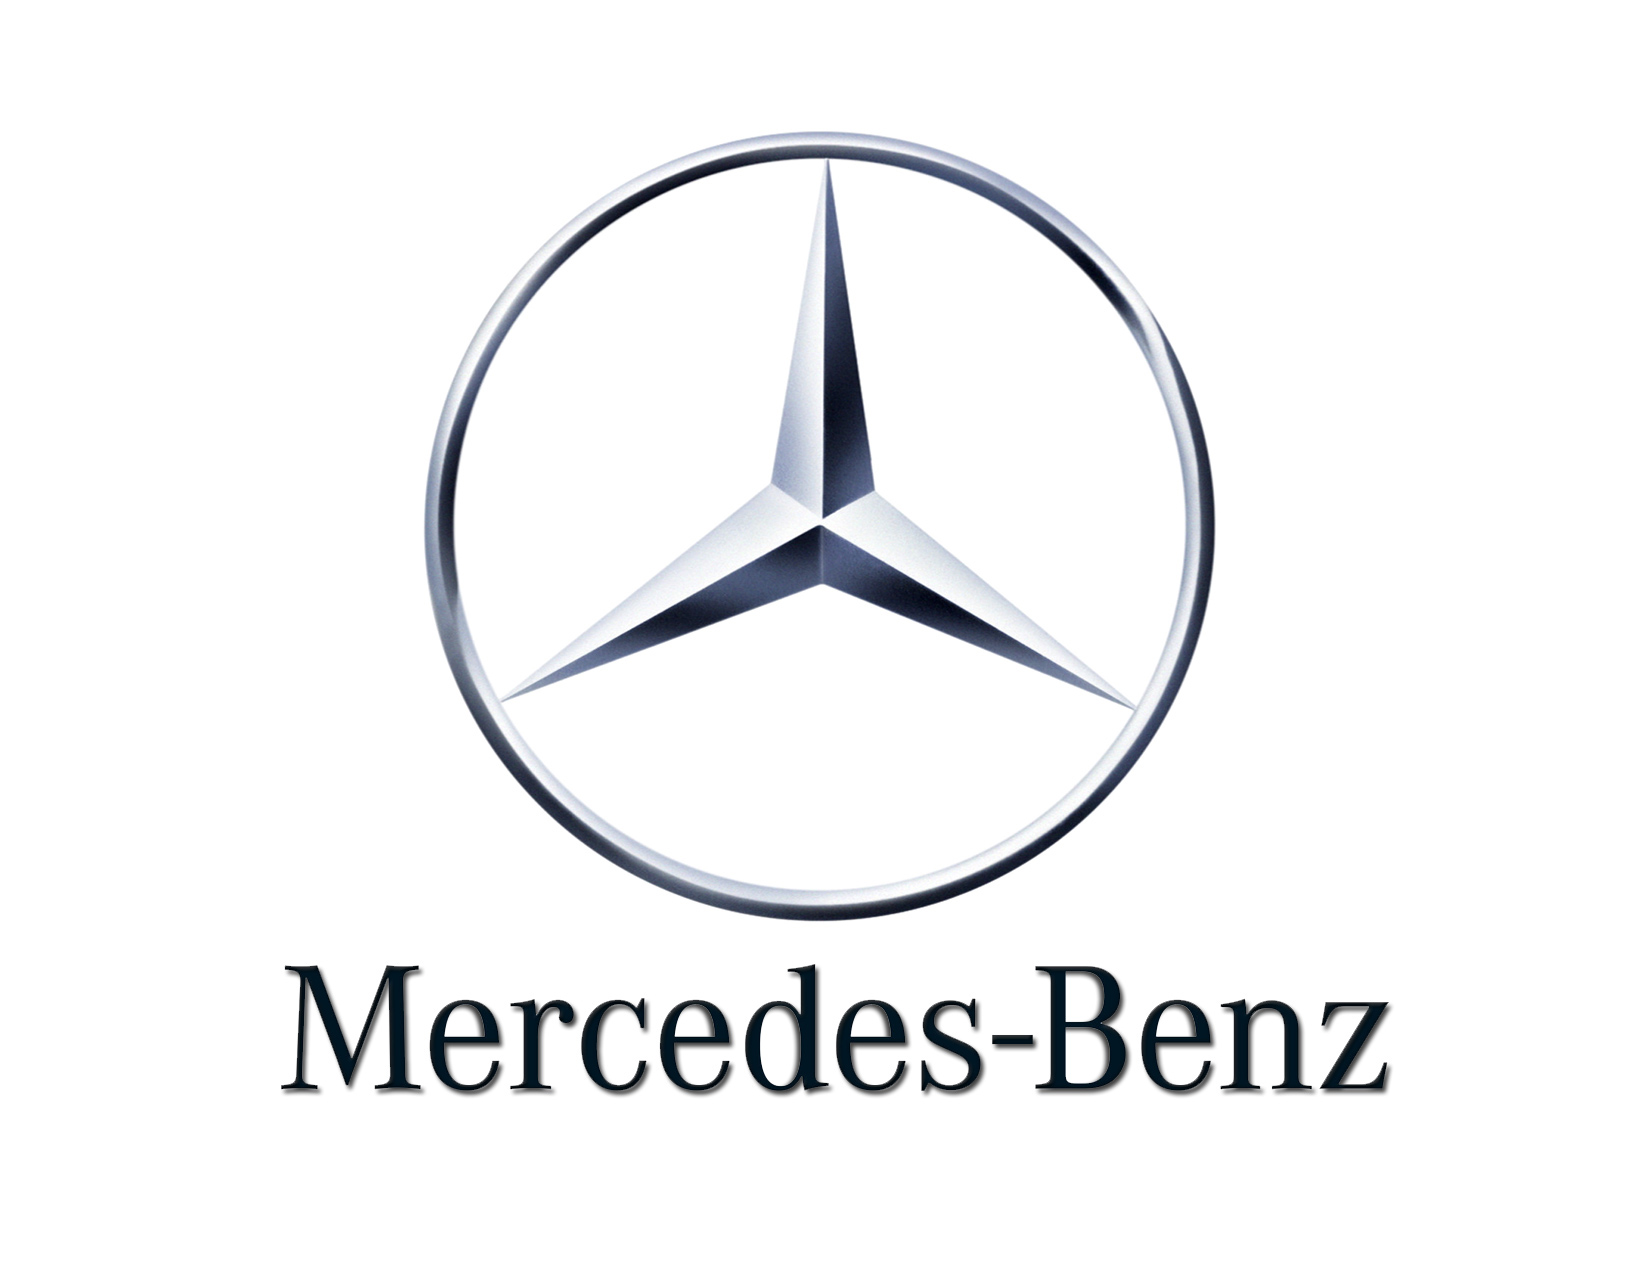 awesome mercedes logo image